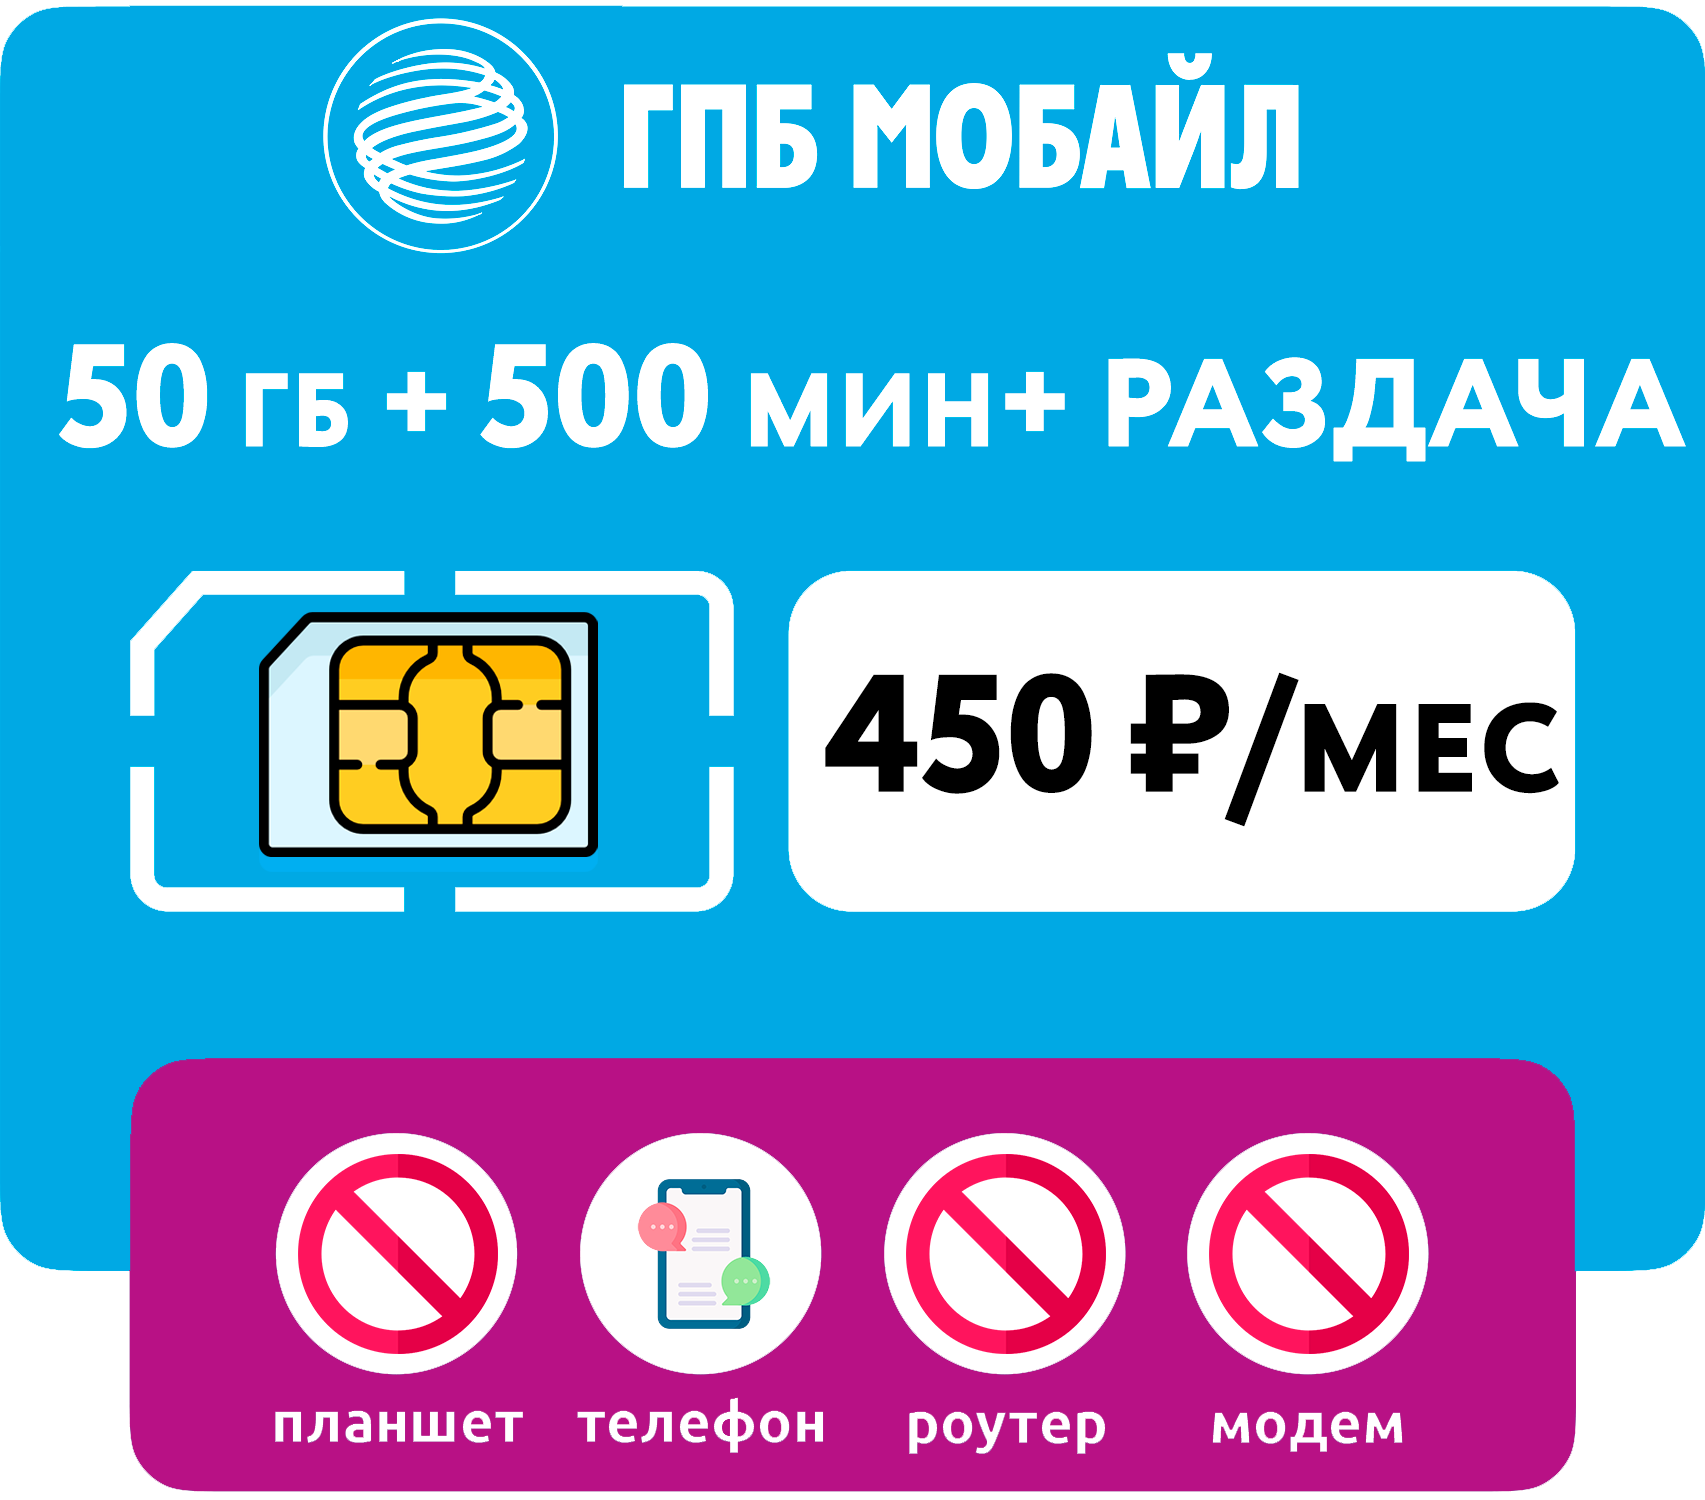 SIM-карта 50 гб интернета 500 мин за 450 руб/мес (смартфоны) + раздача (Москва Московская область Россия)